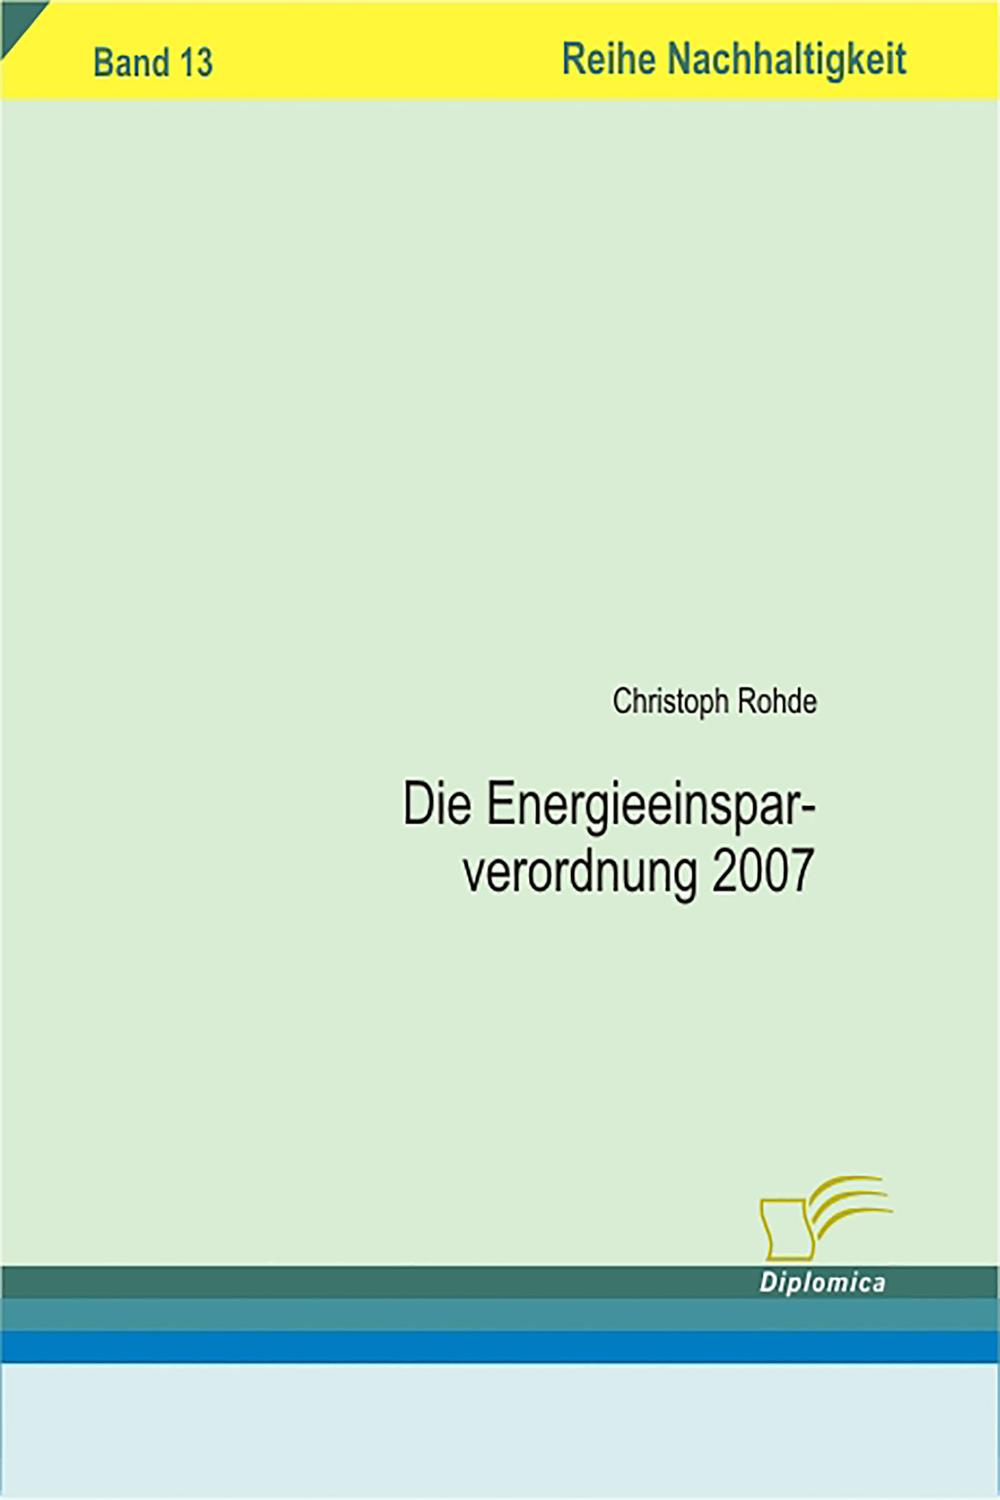 Die Energieeinsparverordnung 2007 - Christoph Rohde